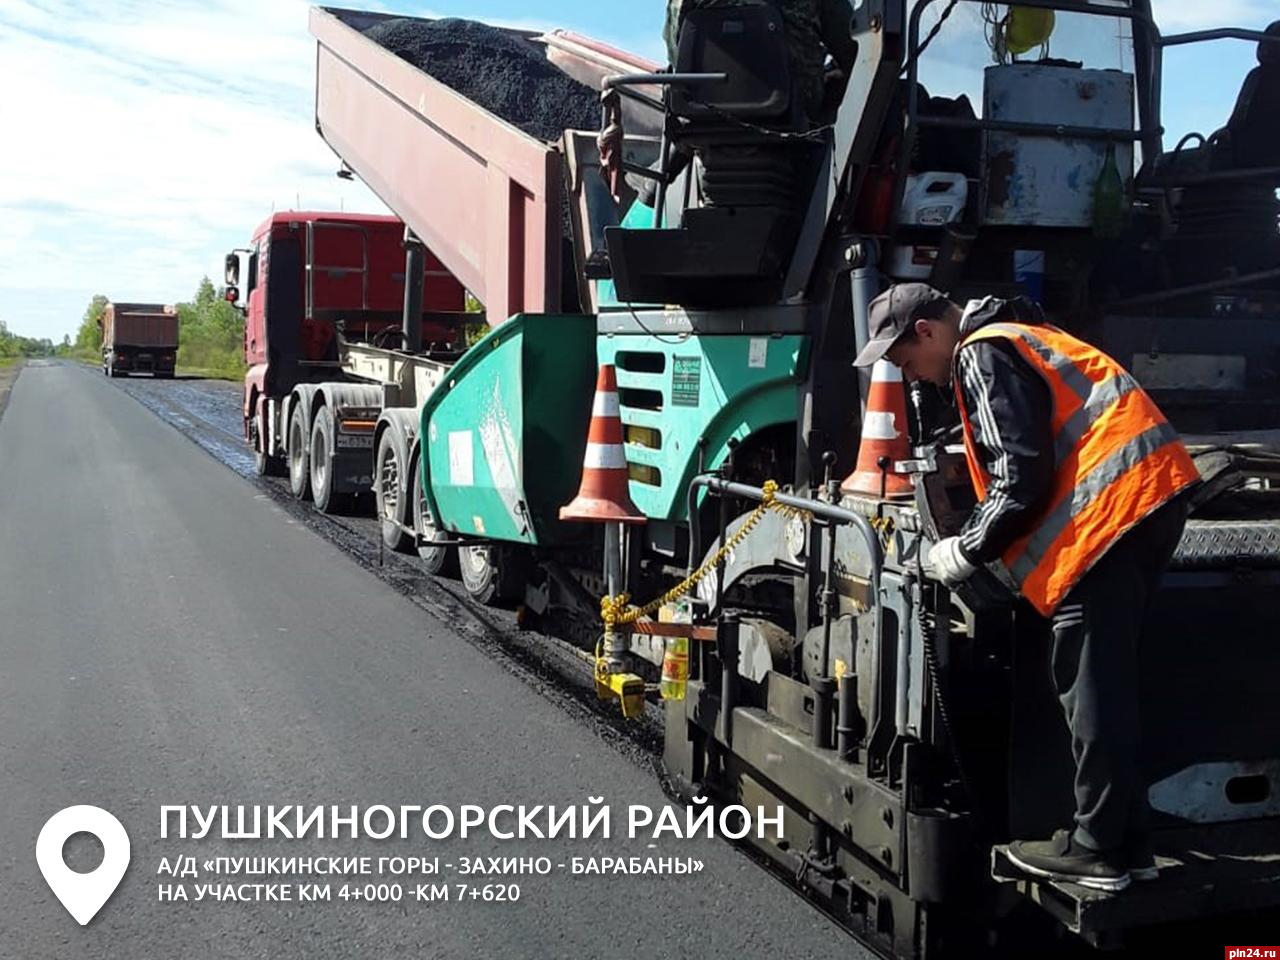 Верхние слои дорог восстанавливают в районах Псковской области